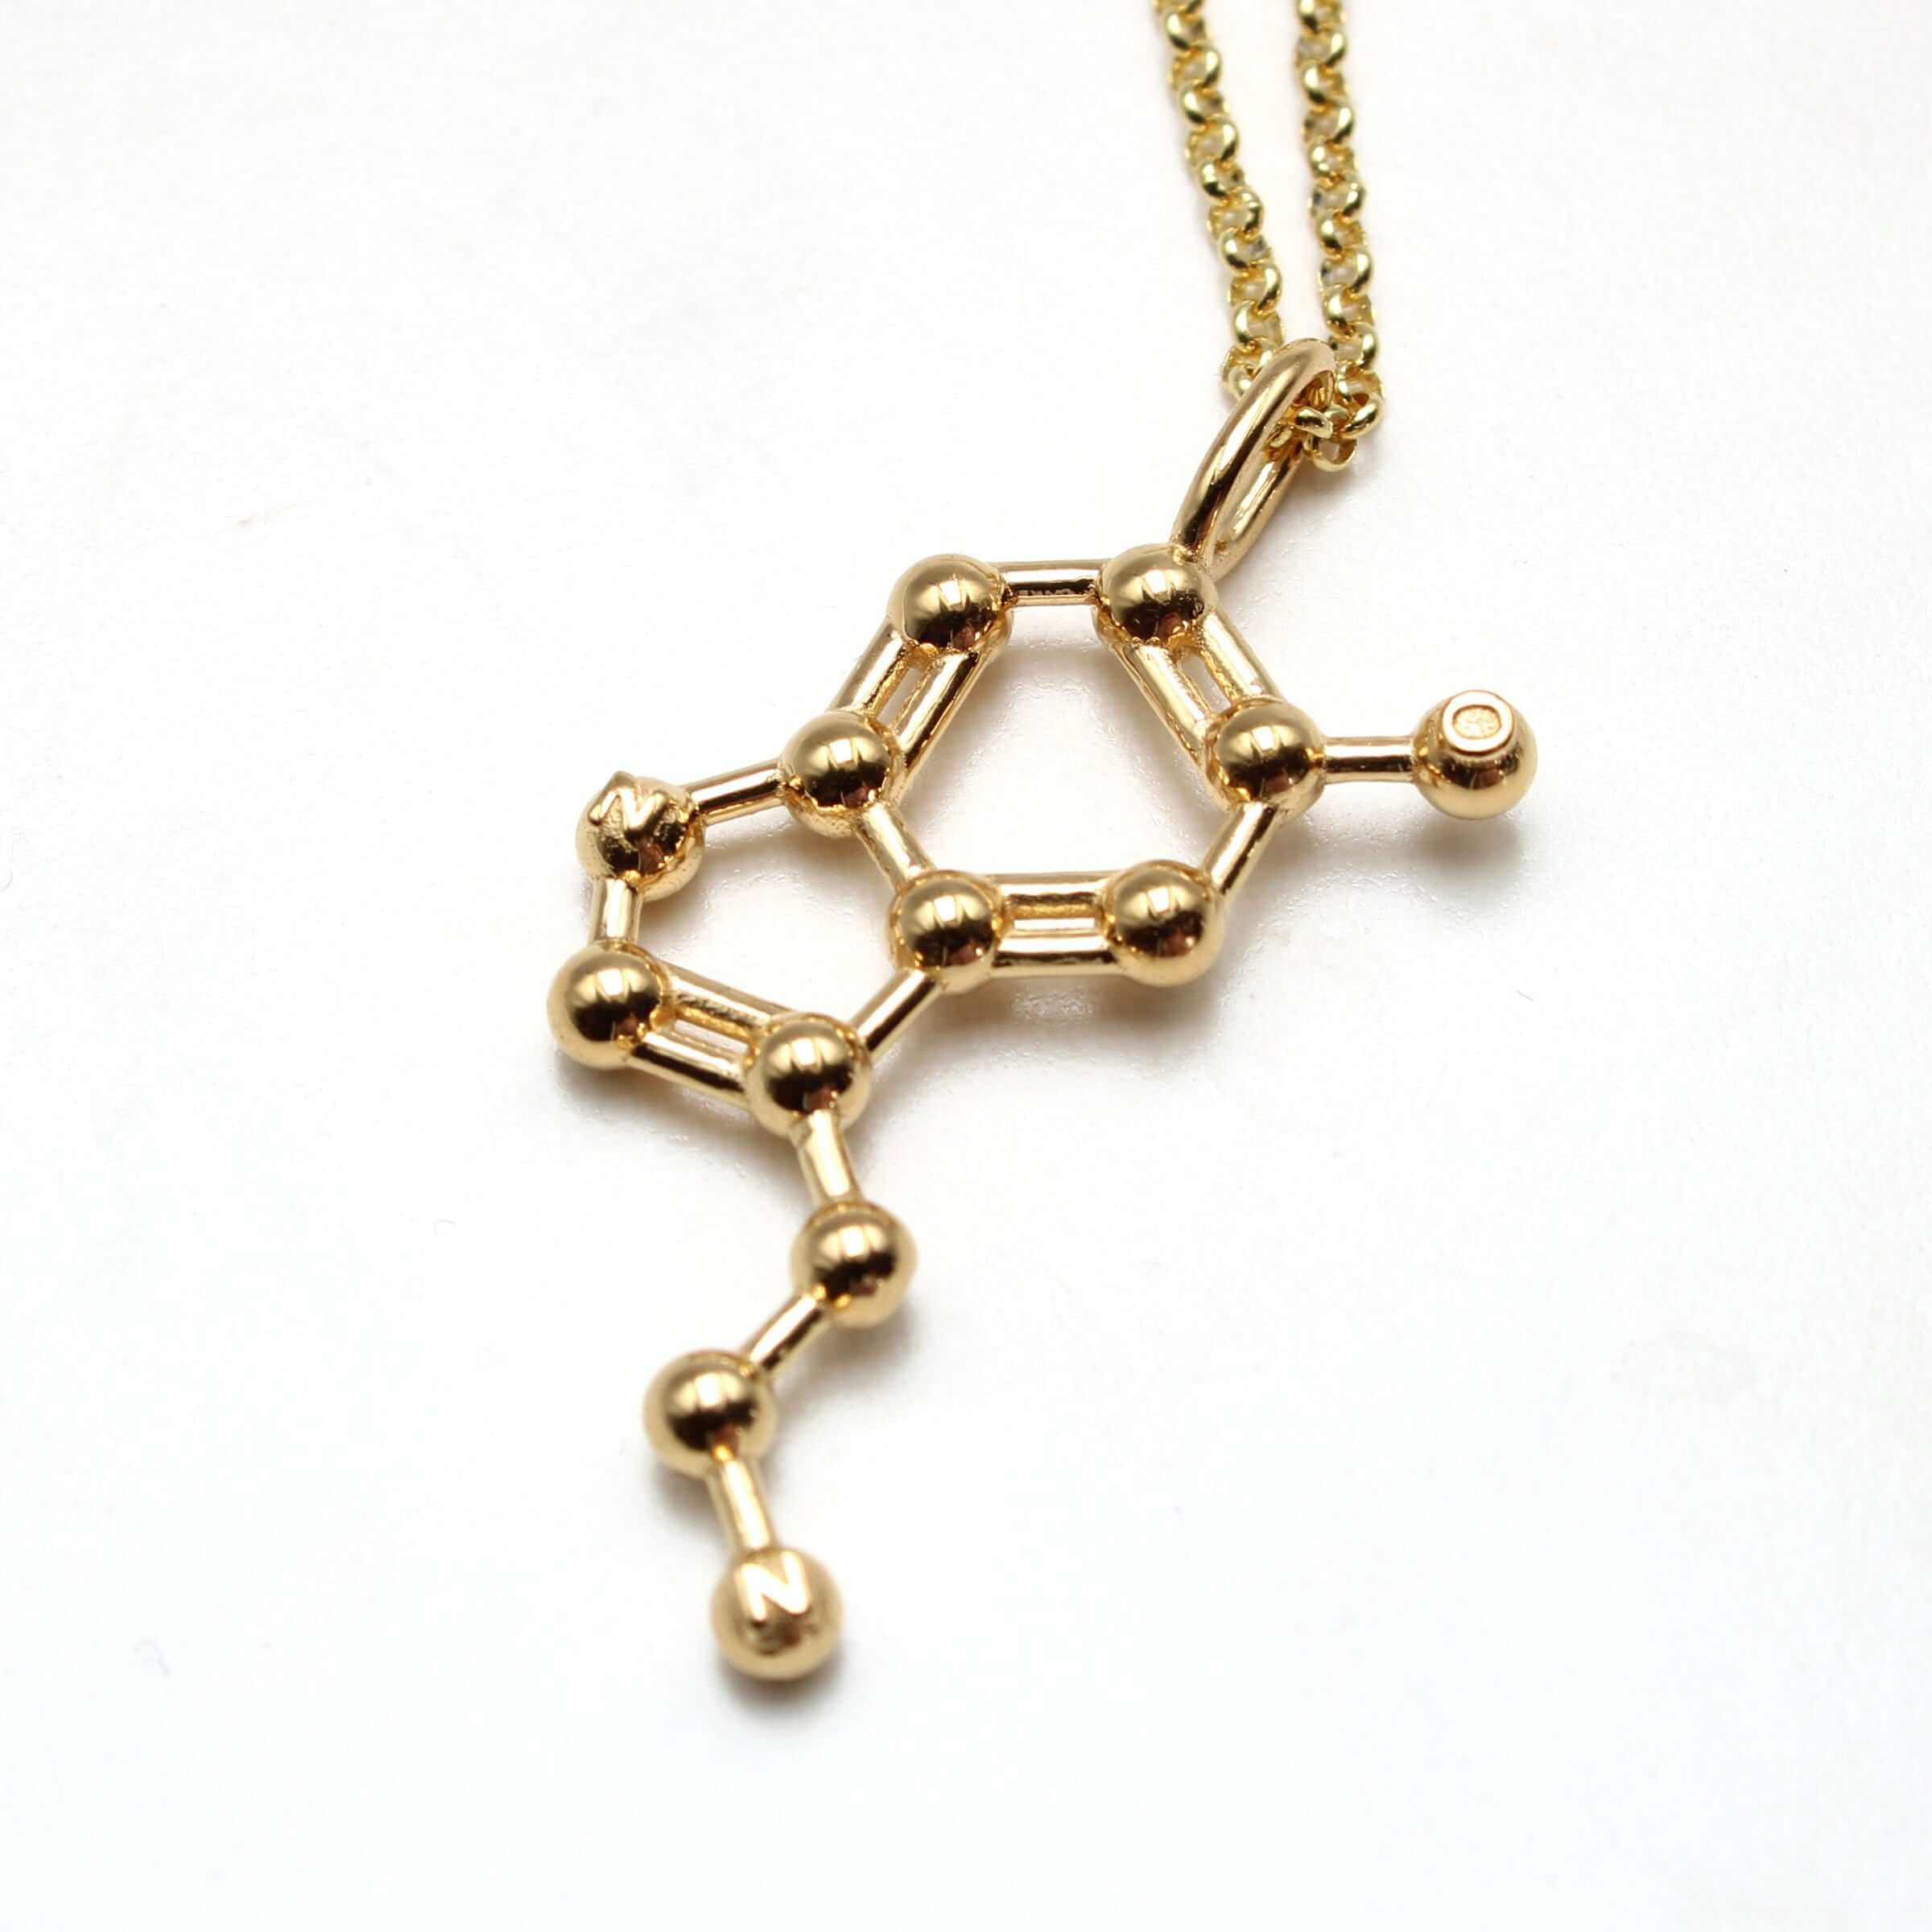 Silver Serotonin Necklace, Serotonin Molecule Necklace, Chemistry Necklace,  Science Necklace, Chemistry Molecule Jewelry Christmas Gift - Etsy | Molecule  jewelry, Science necklaces, Science jewelry